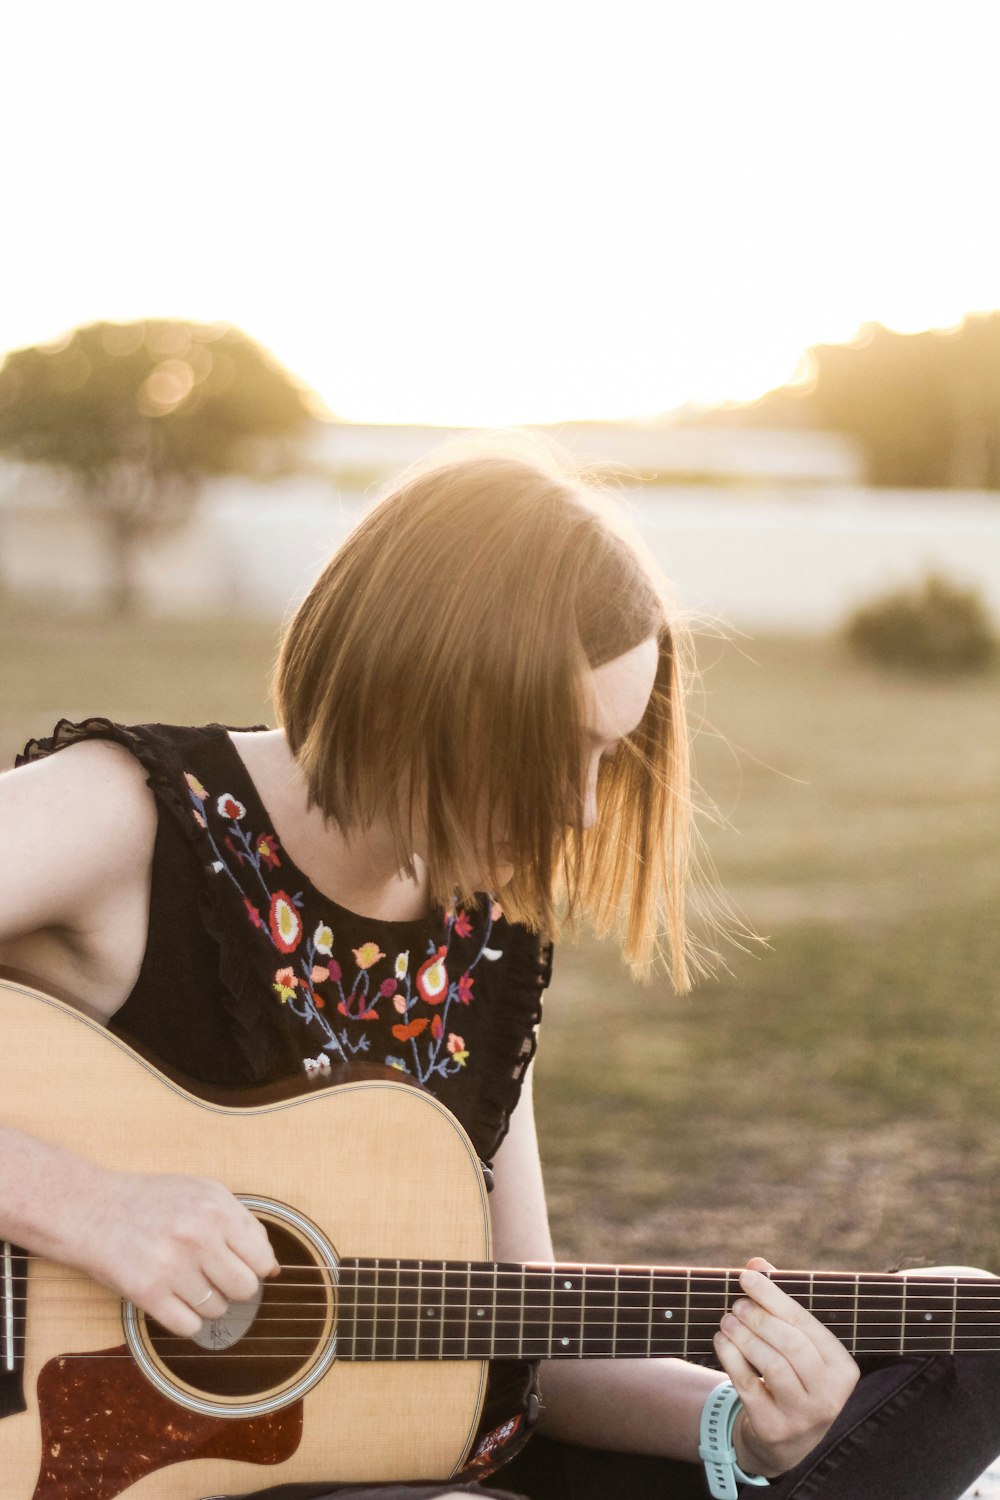 アコースティックギターを弾く女性の写真 Unsplashの無料写真